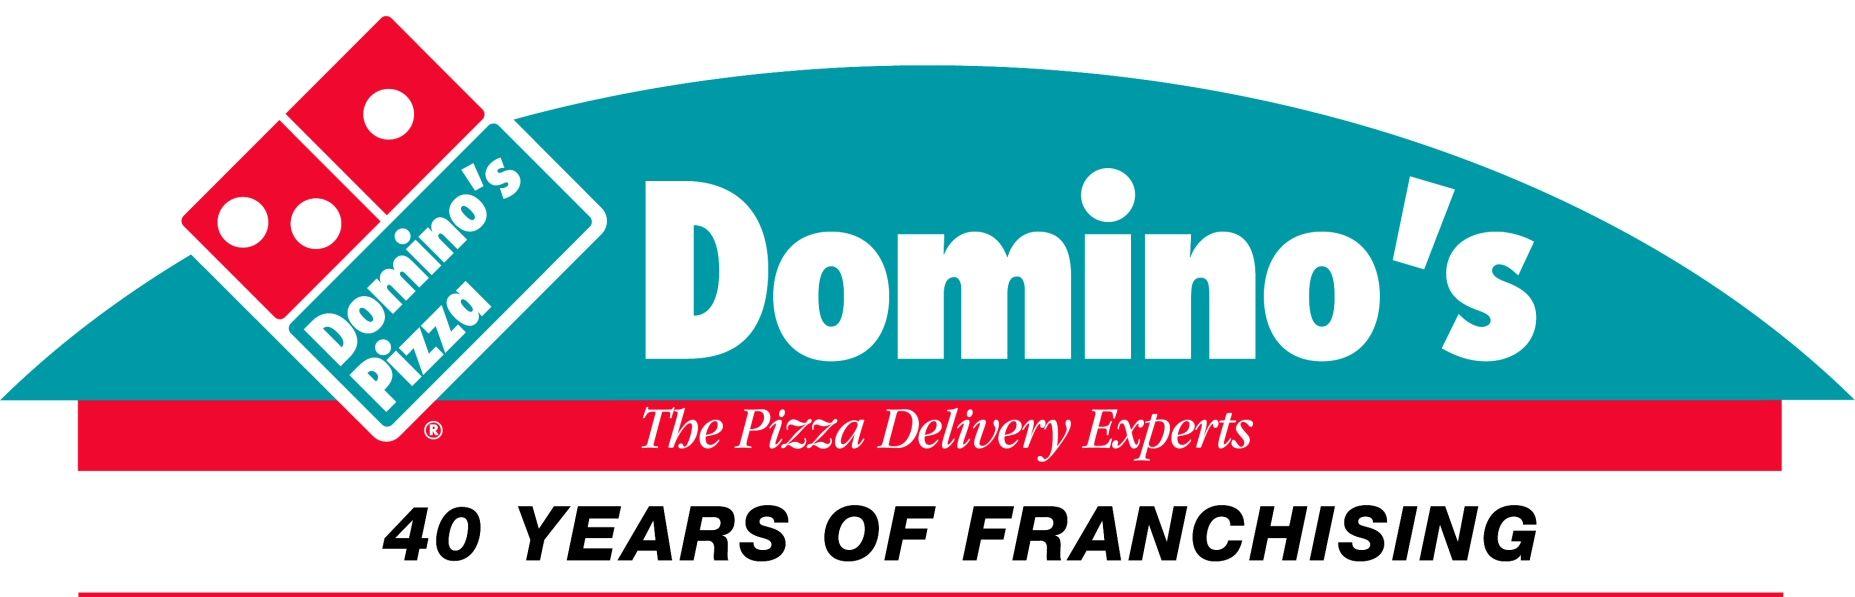 Old Domino's Pizza Logo - Domino's | Logopedia | FANDOM powered by Wikia